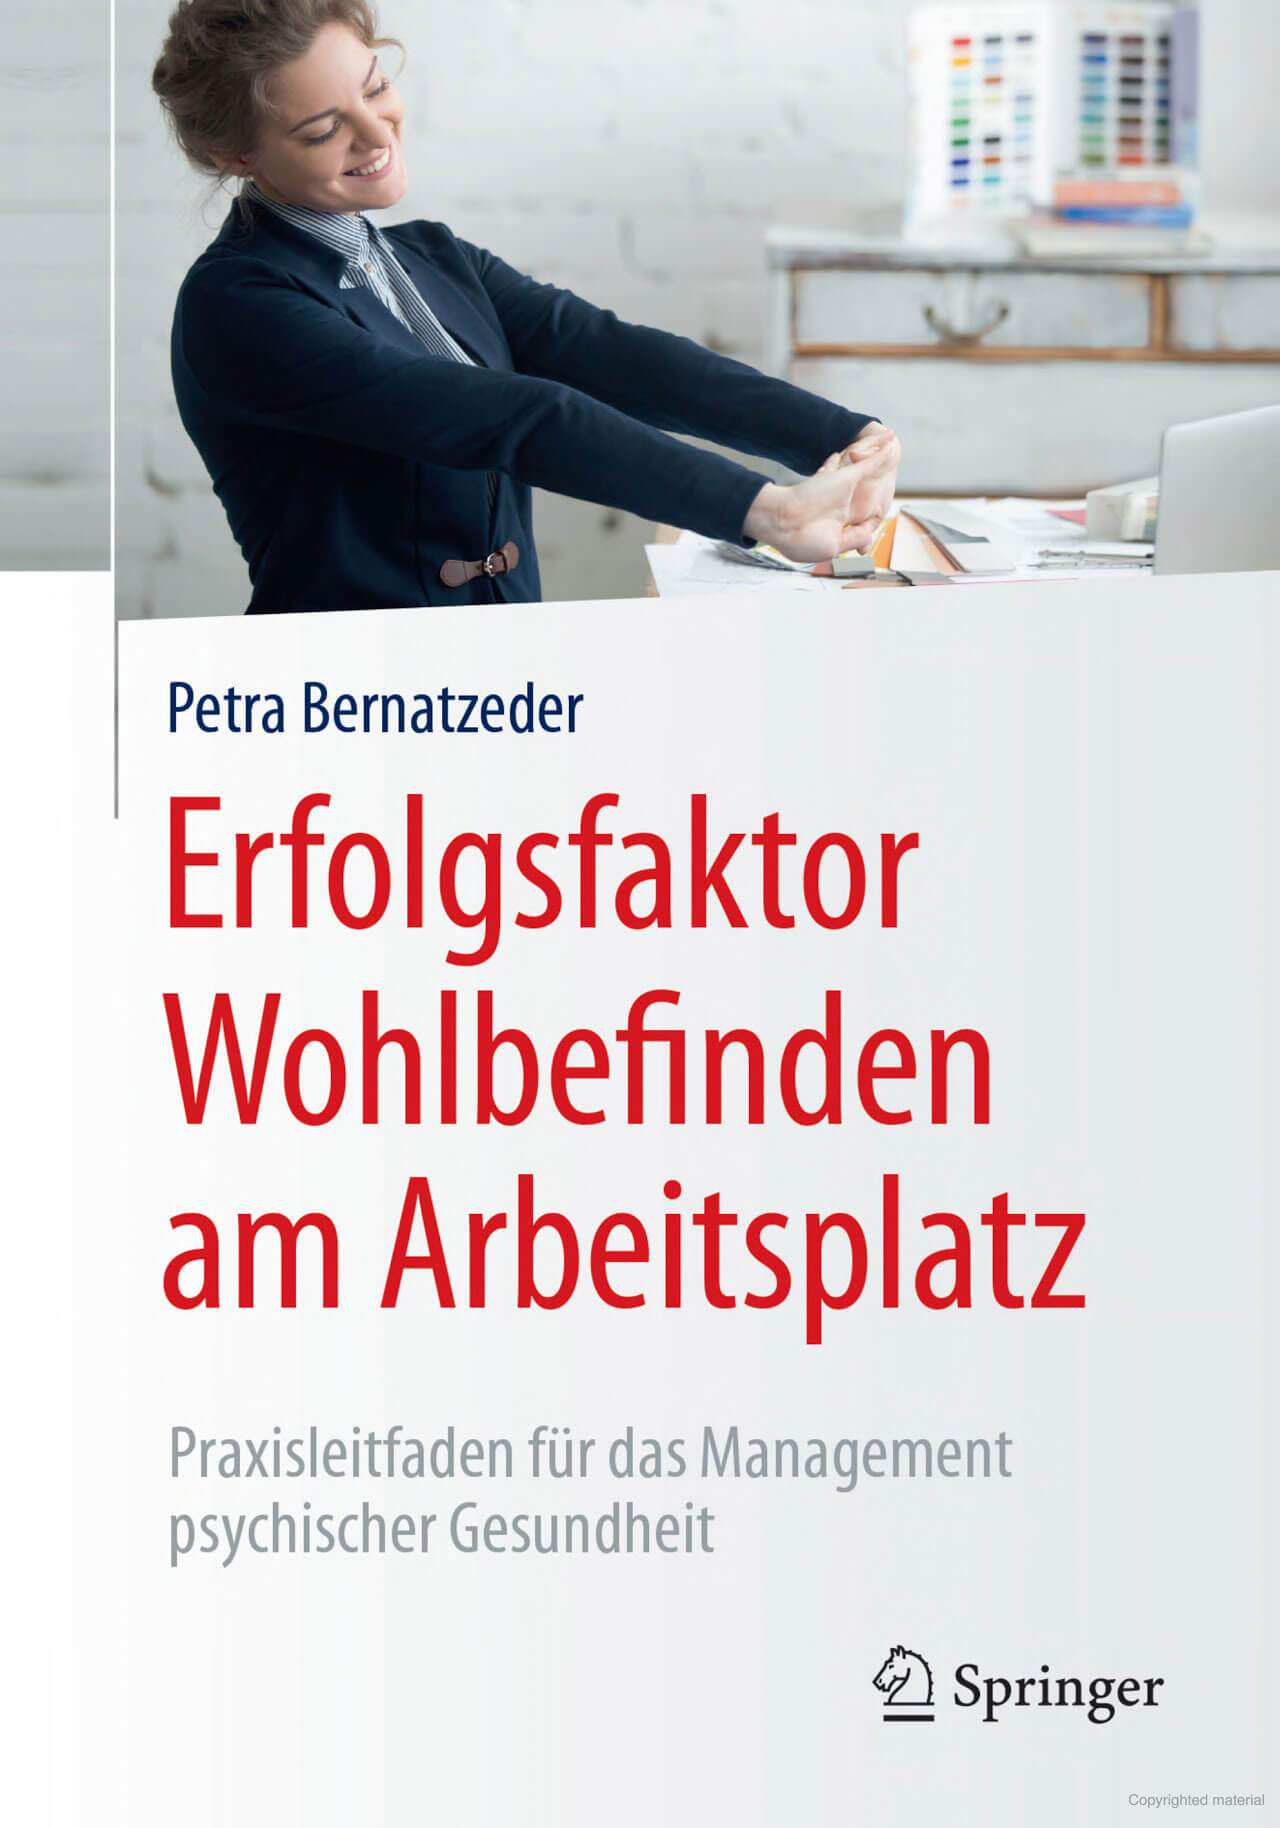 Management psychischer Gesundheit Bernatzeder Springer 2018